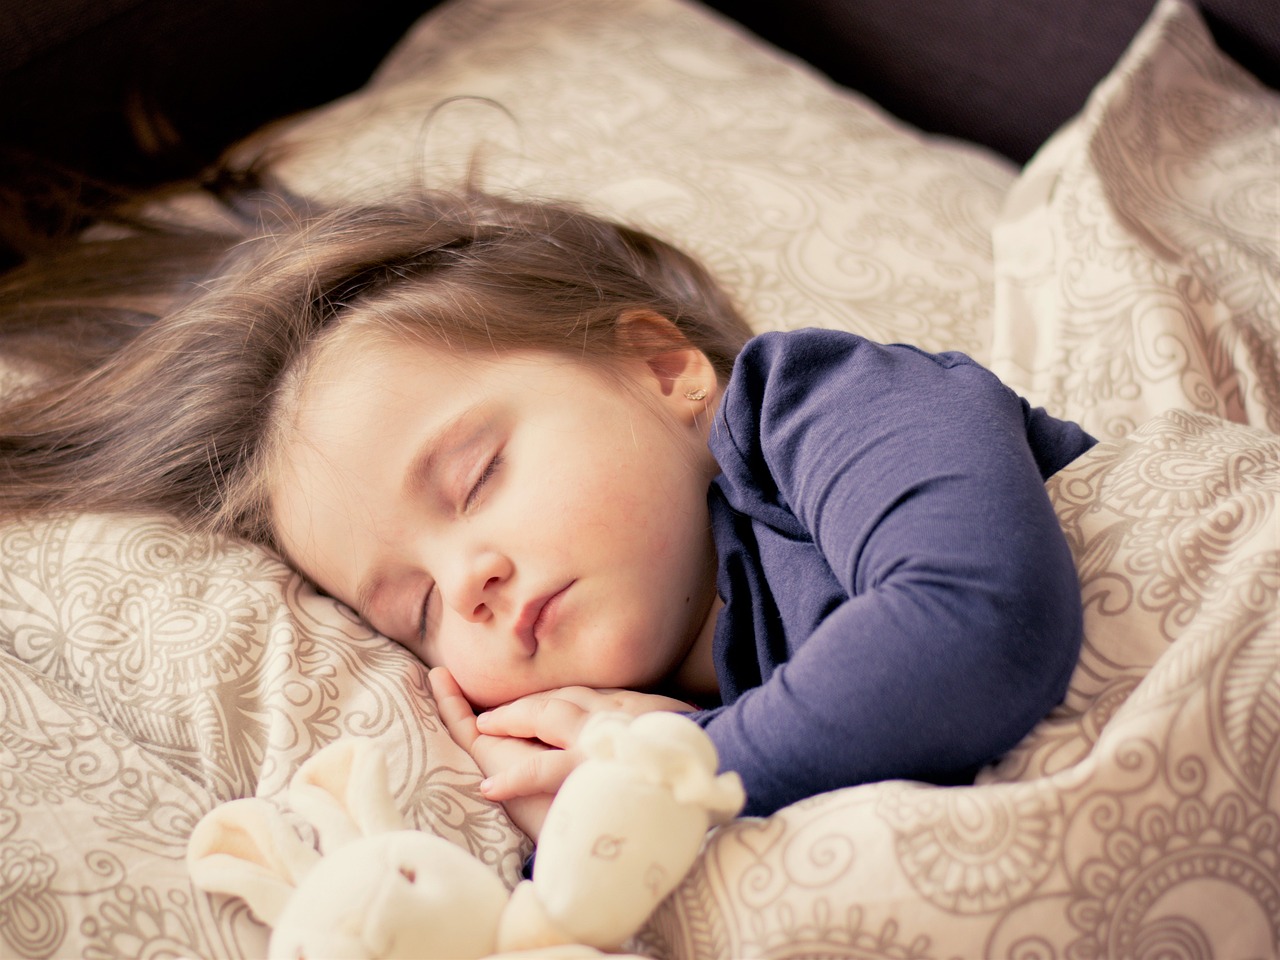 Rady dla rodziców: Jak oduczyć dziecko spać z rodzicami?